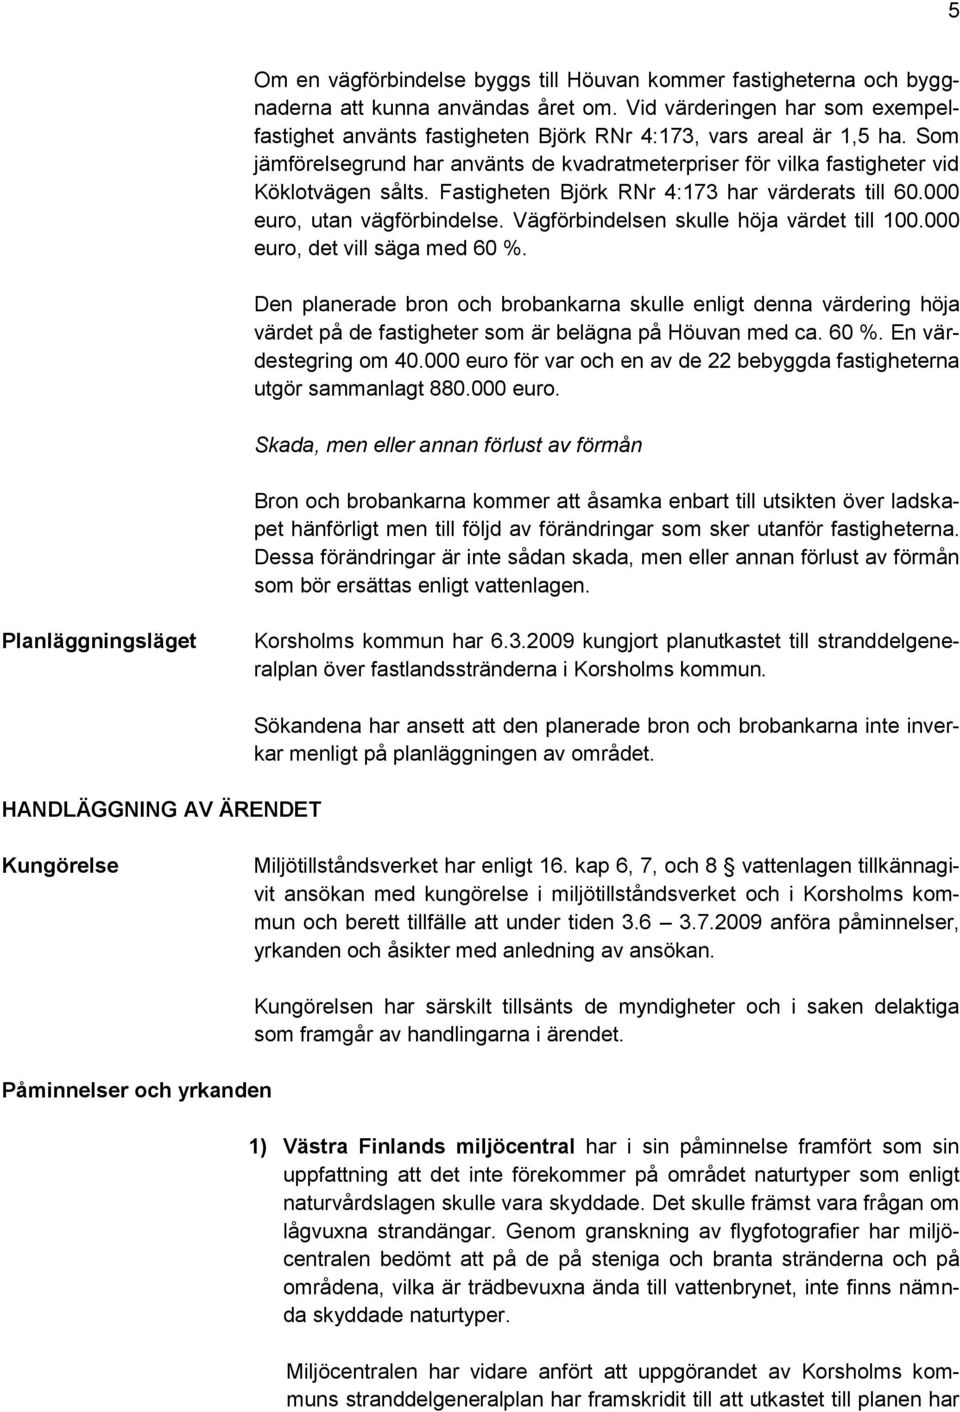 Fastigheten Björk RNr 4:173 har värderats till 60.000 euro, utan vägförbindelse. Vägförbindelsen skulle höja värdet till 100.000 euro, det vill säga med 60 %.